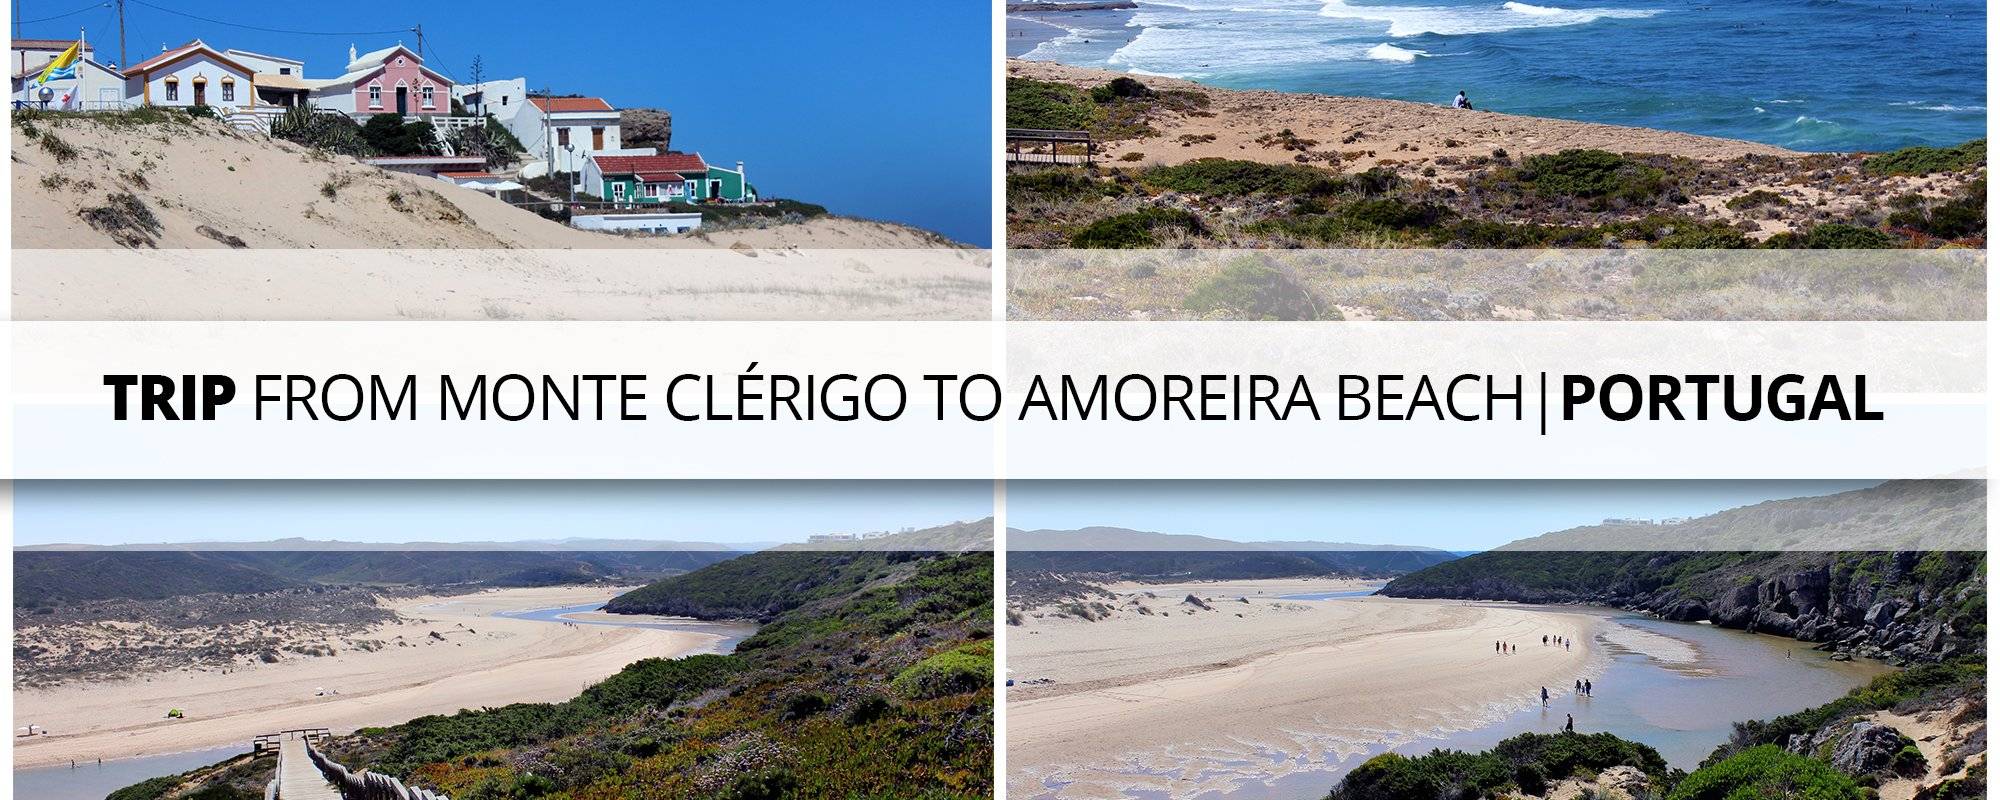 Trip from Monte Clérigo to Amoreira Beach - Aljezur | Portugal